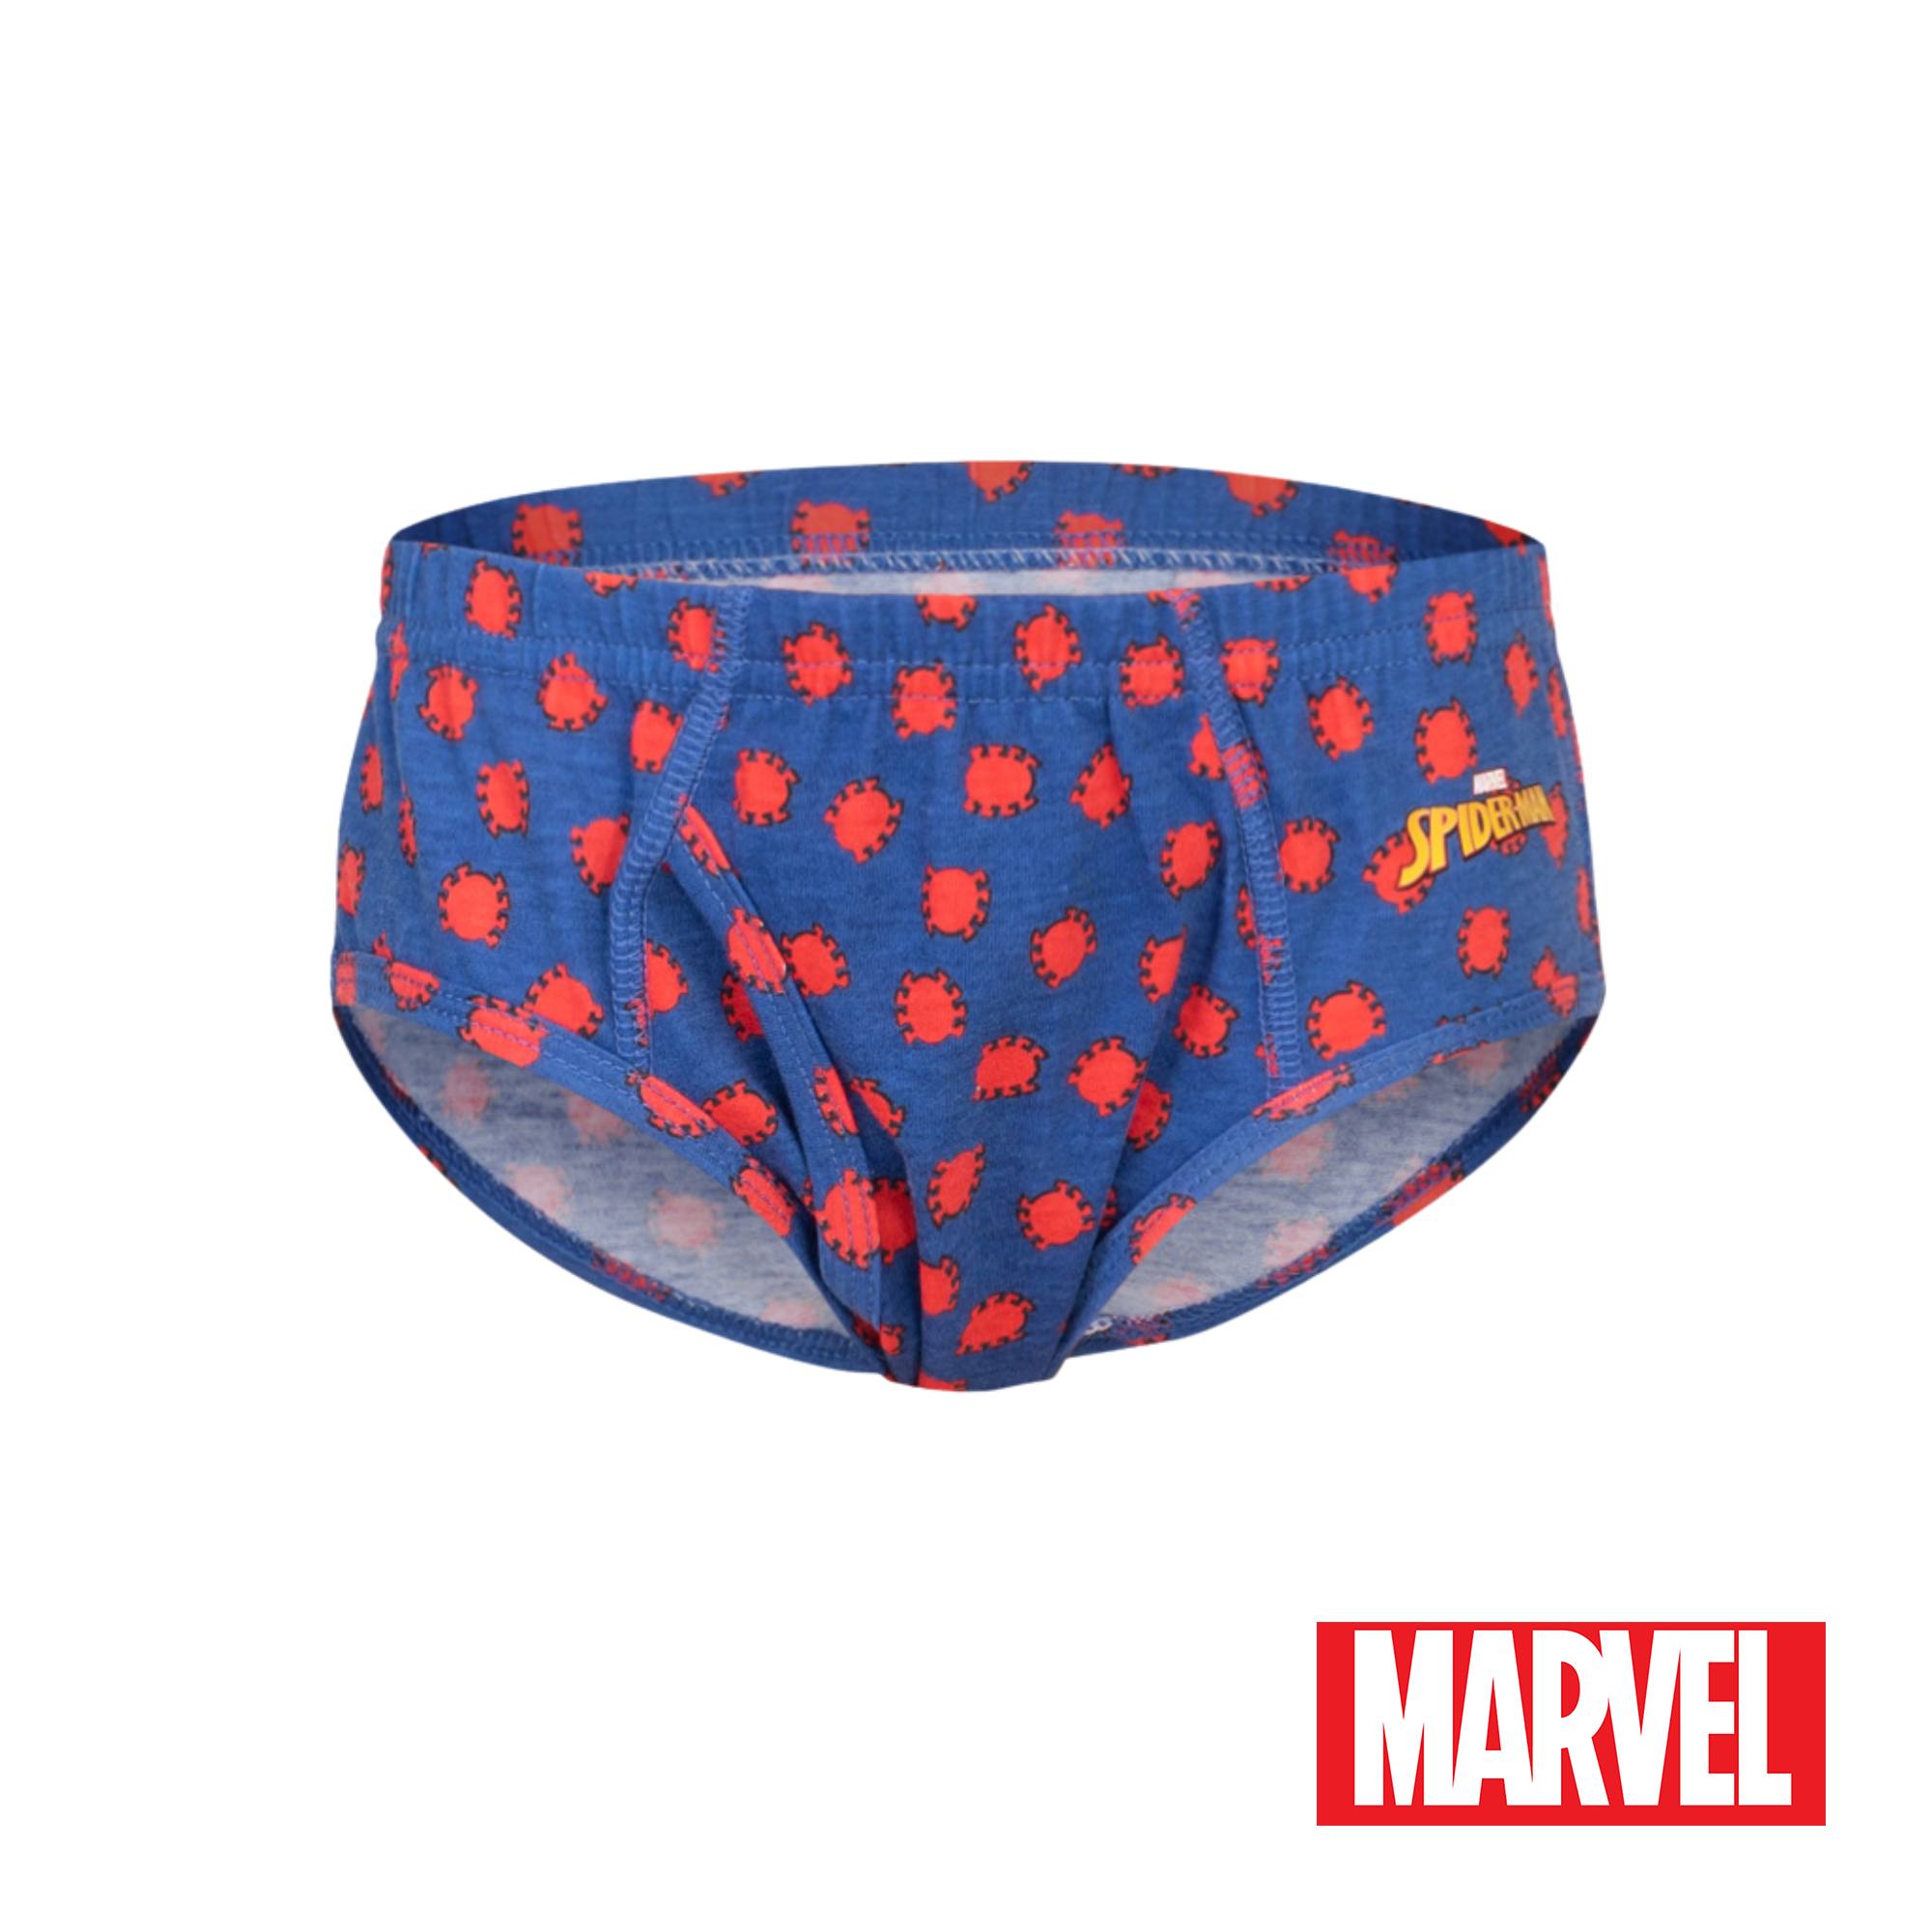 Marvel Spiderman 3-in-1 Pack Bikini Briefs Boys Kids Underwear